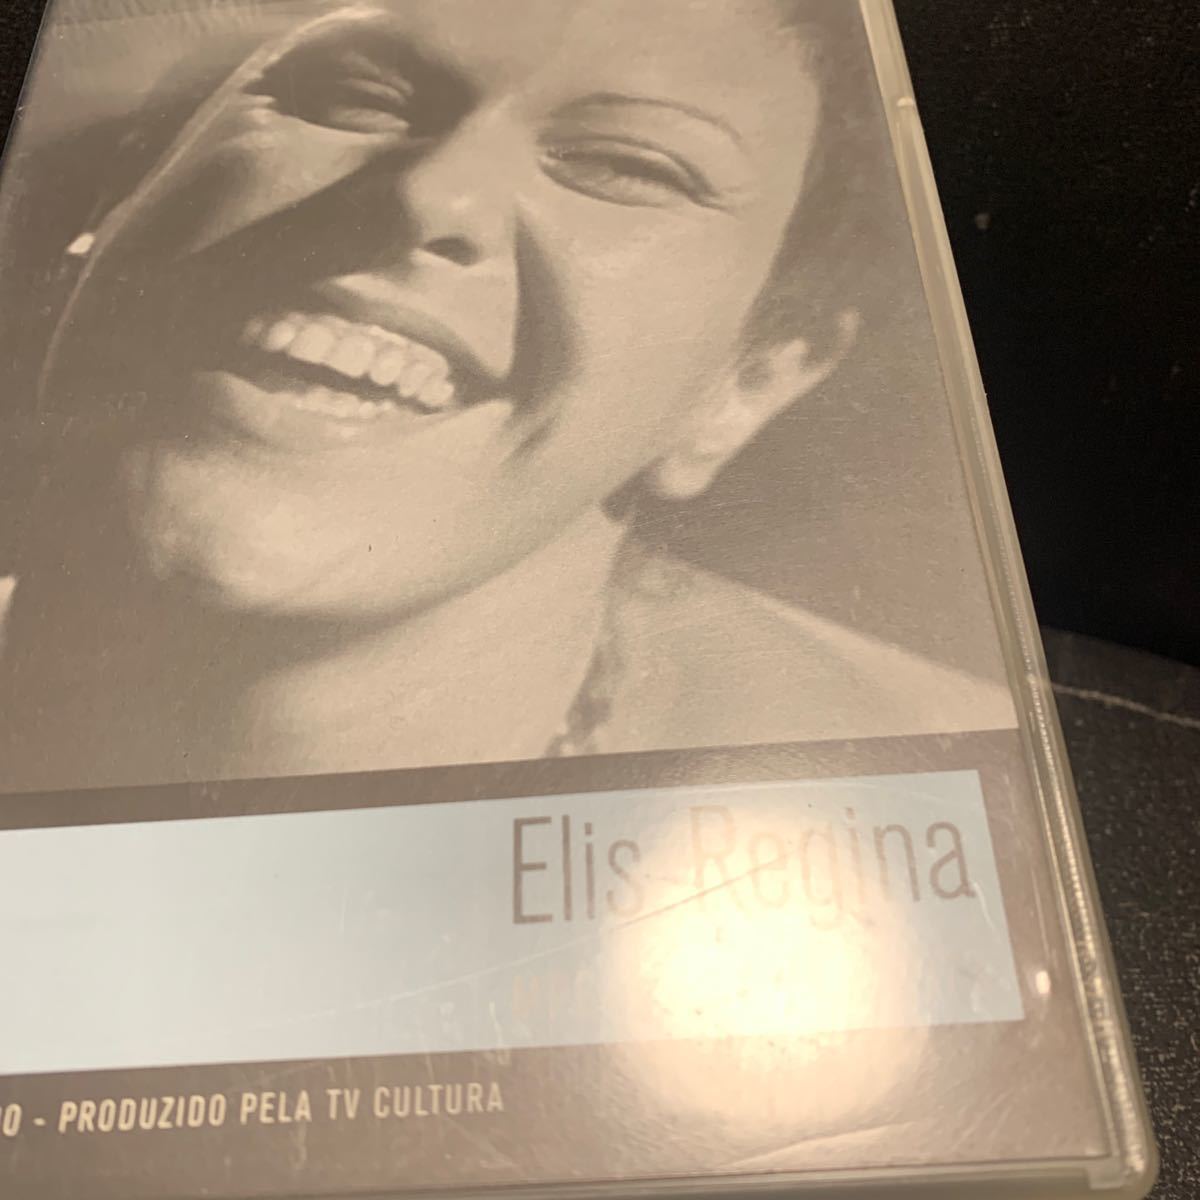  Ellis * regina |ELIS REGINA[MPB ESPECIAL 1973]DVD